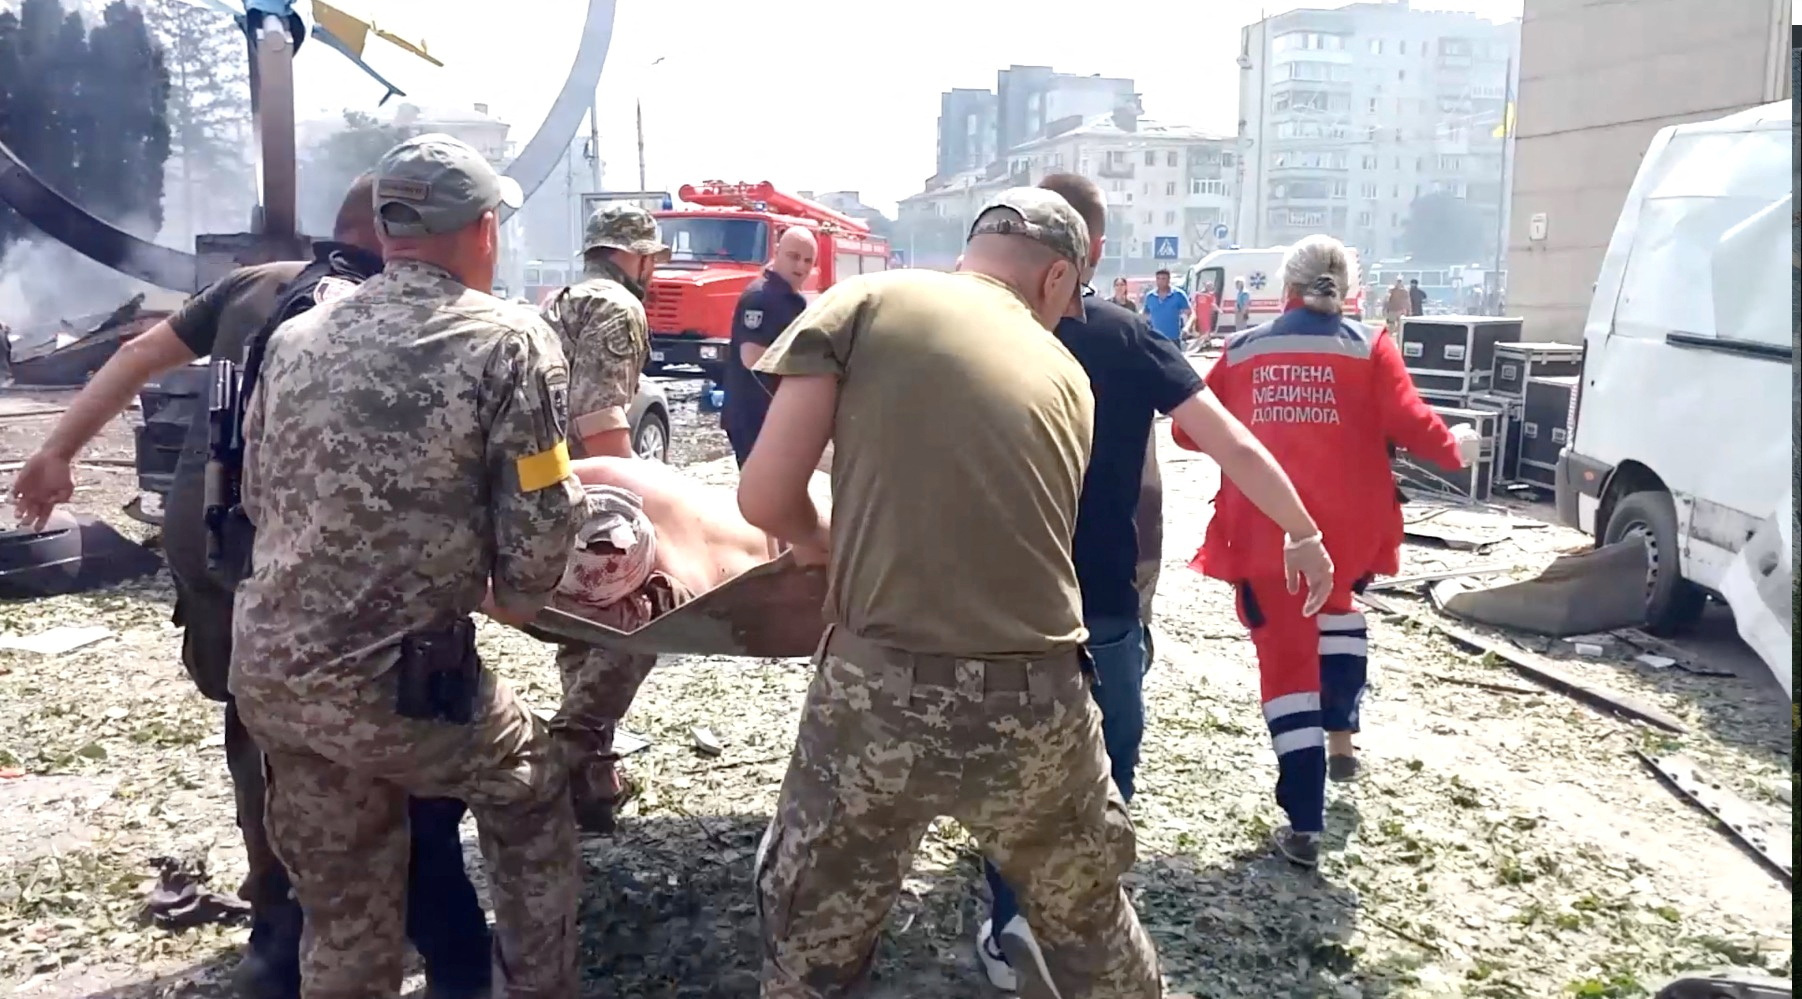 Rescatistas cargan el cuerpo de una persona en el lugar de un ataque militar ruso.